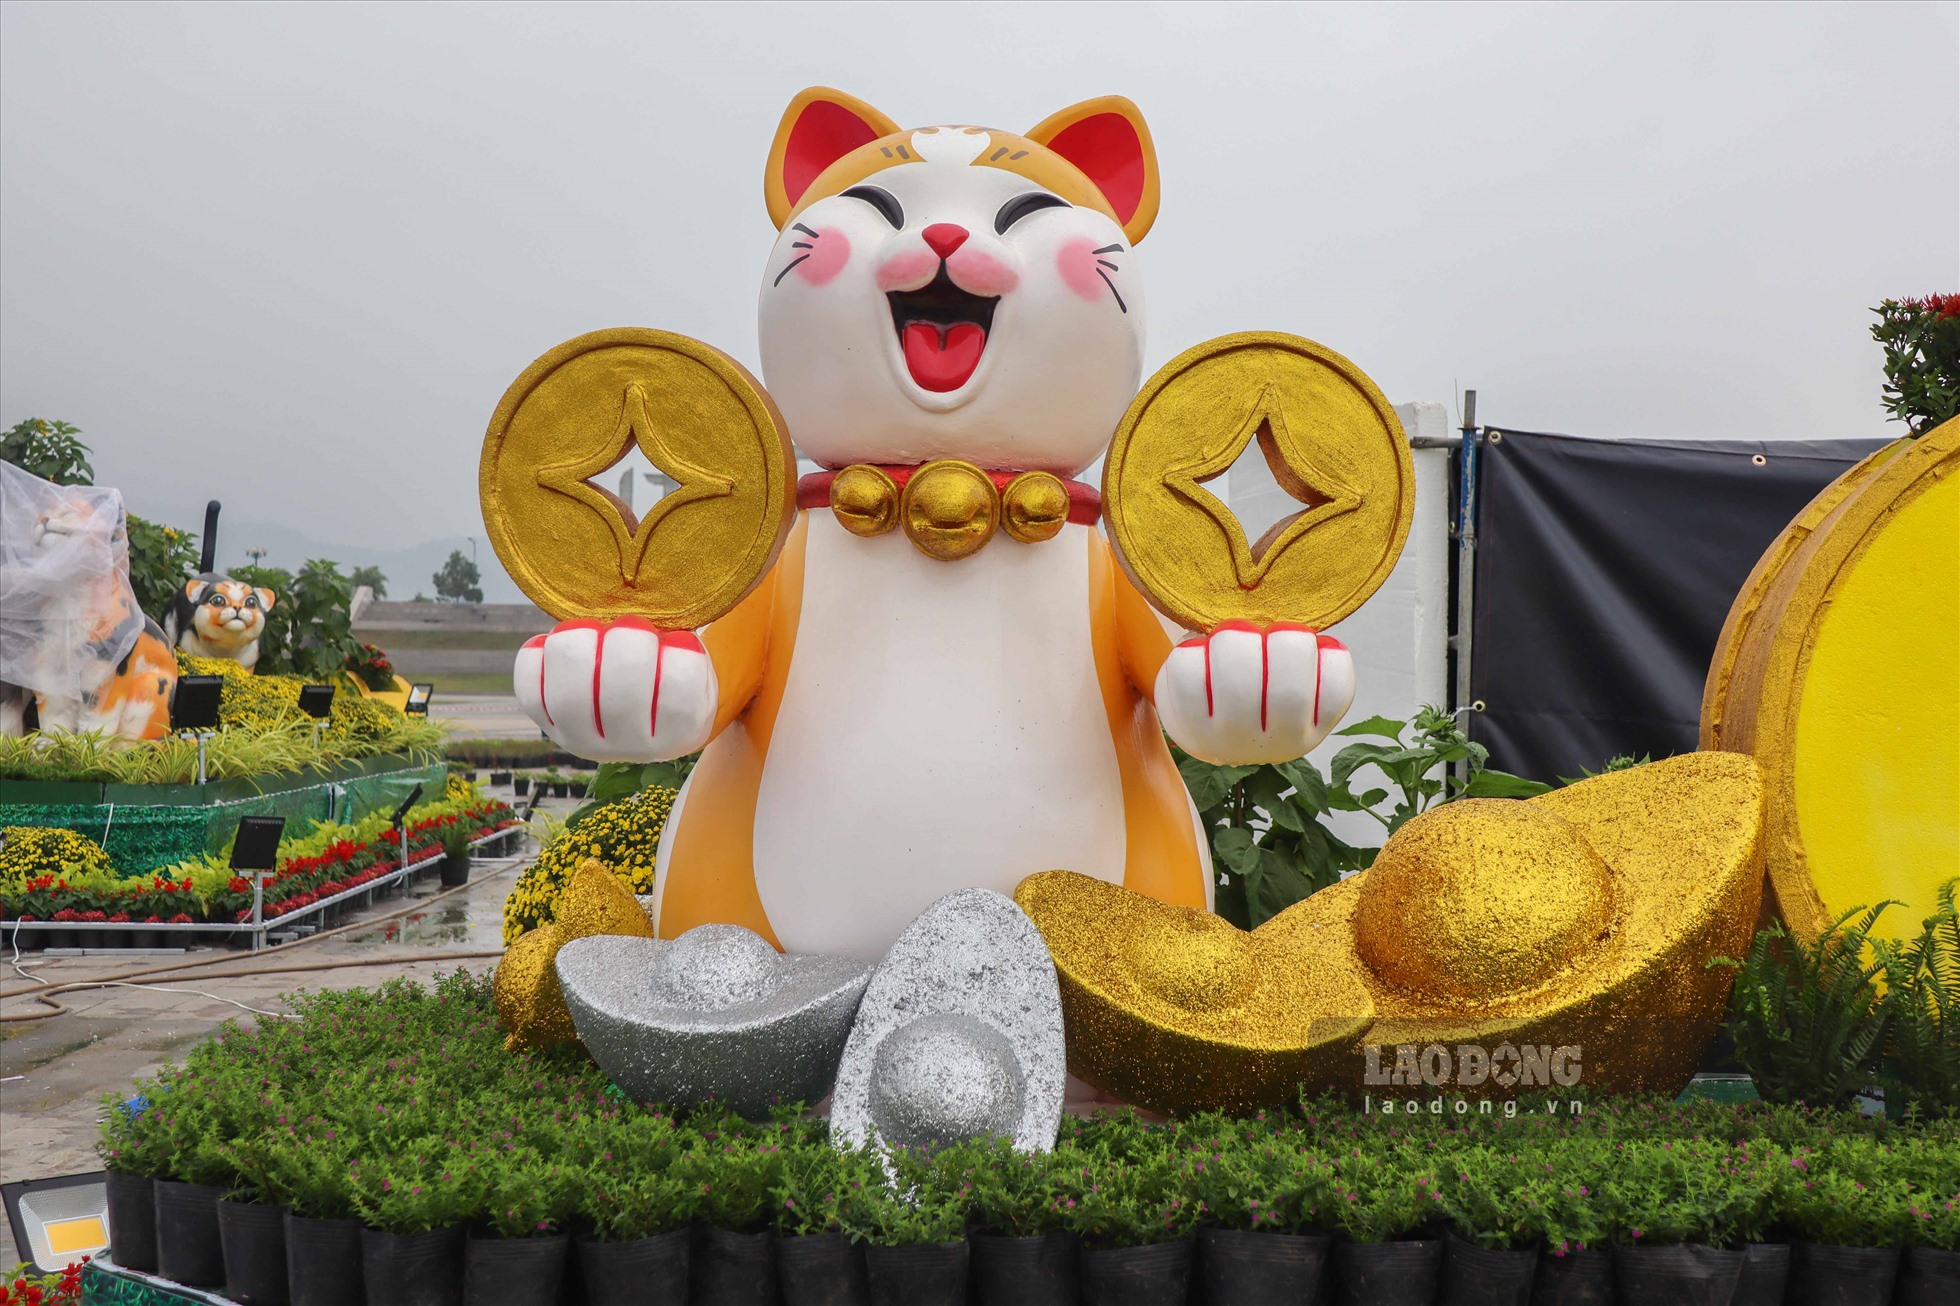 Xung quanh là 4 chú mèo được cách điệu có tạo hình ngộ nghĩnh, đang cầm những thỏi vàng, đồng tiền với ý nghĩa mang đến nhiều tài lộc cho người dân trong năm 2023. Mỗi ngày, địa điểm này có hàng trăm lượt người đến xem.